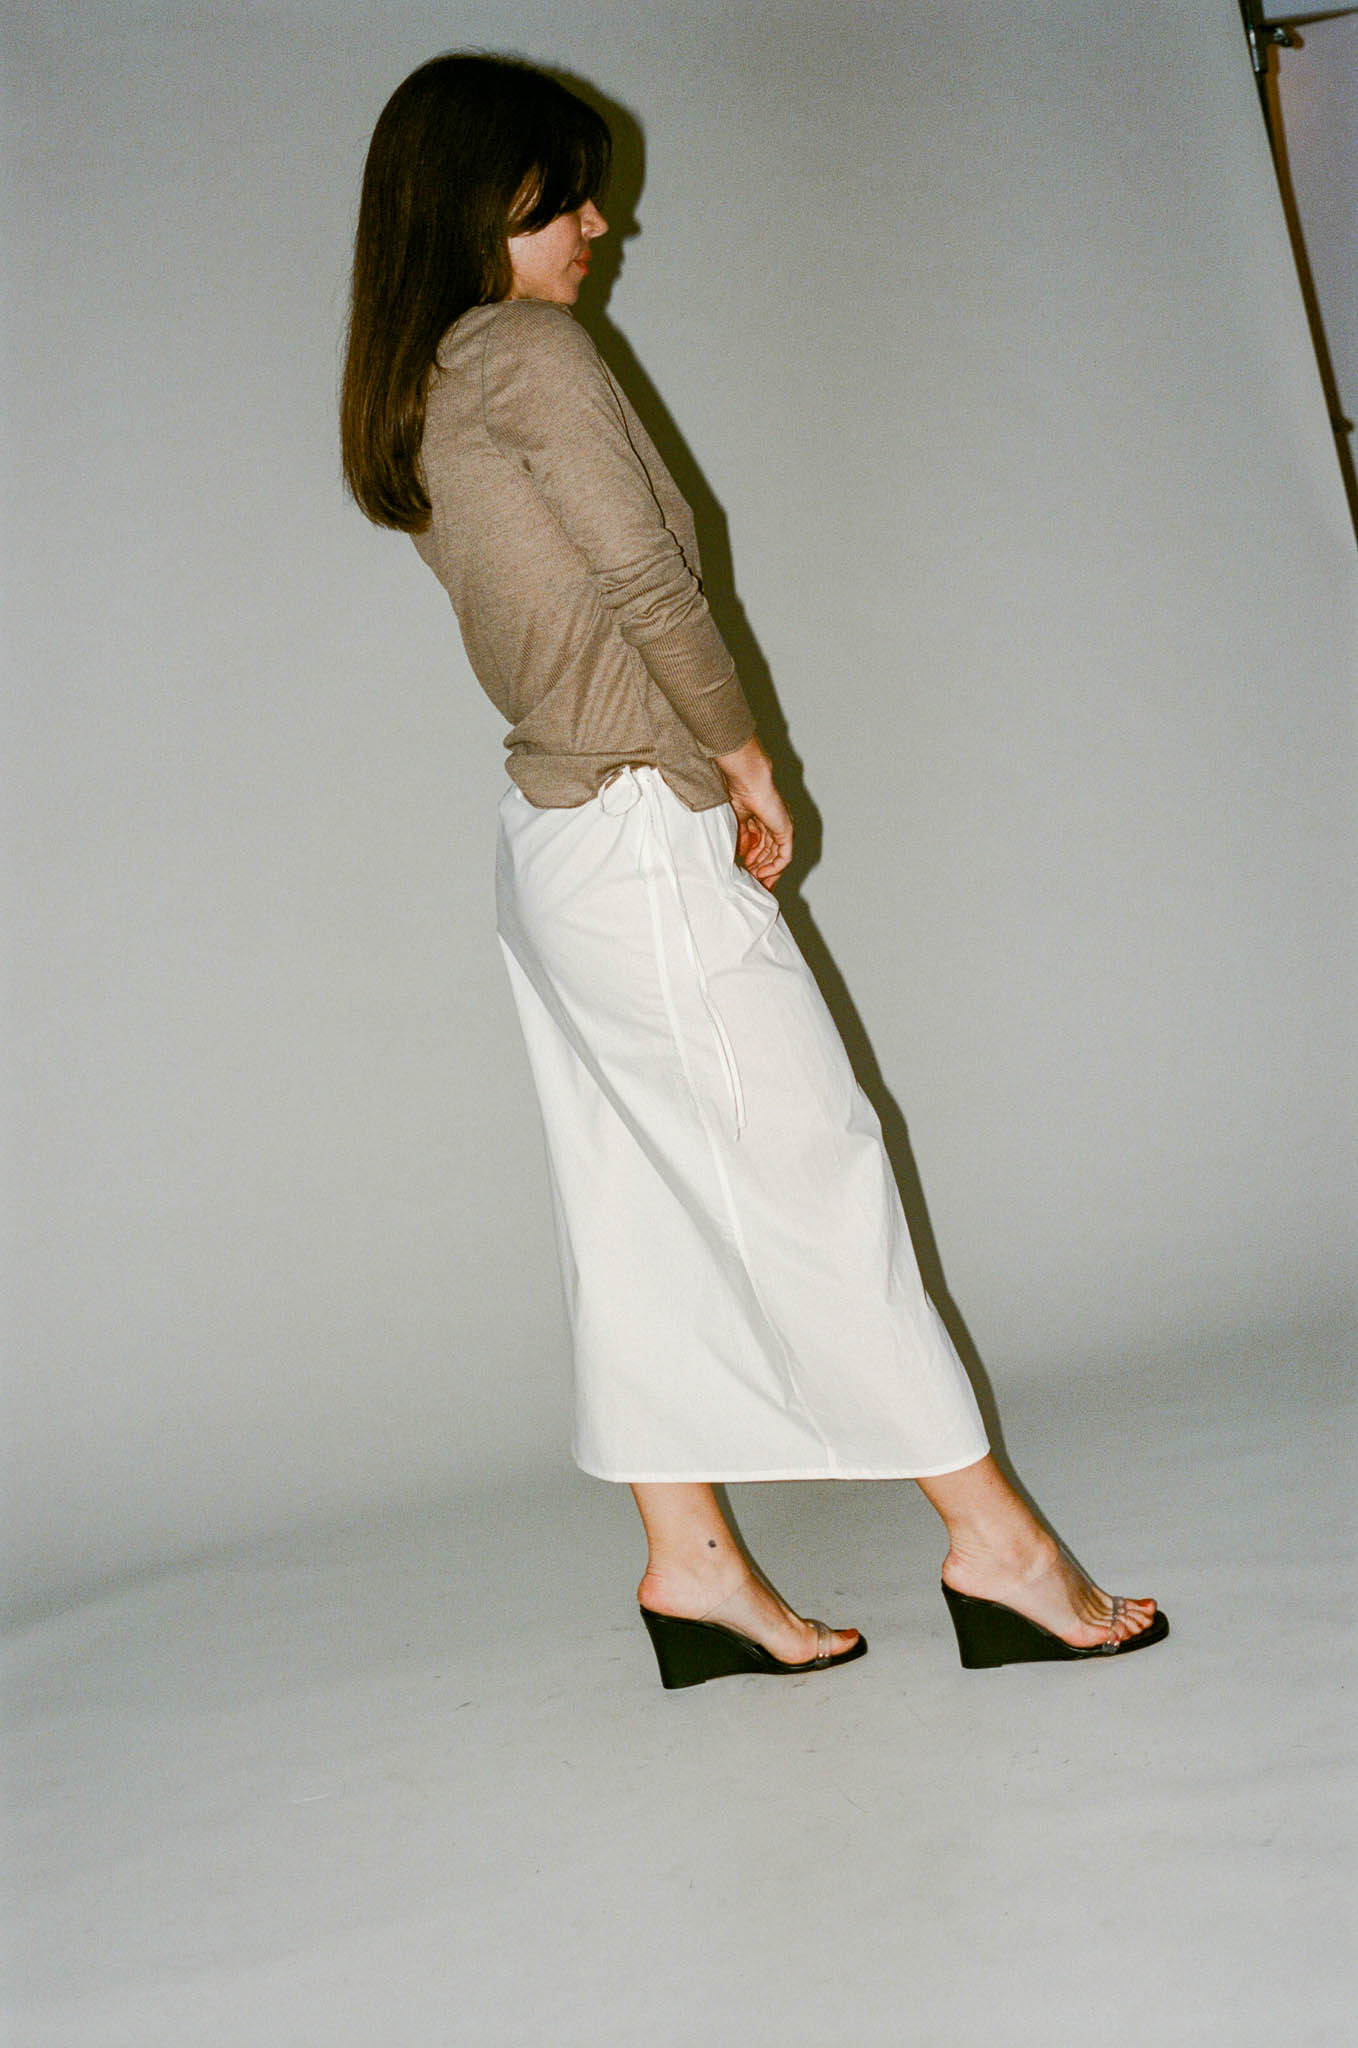 Deiji Studios Pintuck Skirt in White